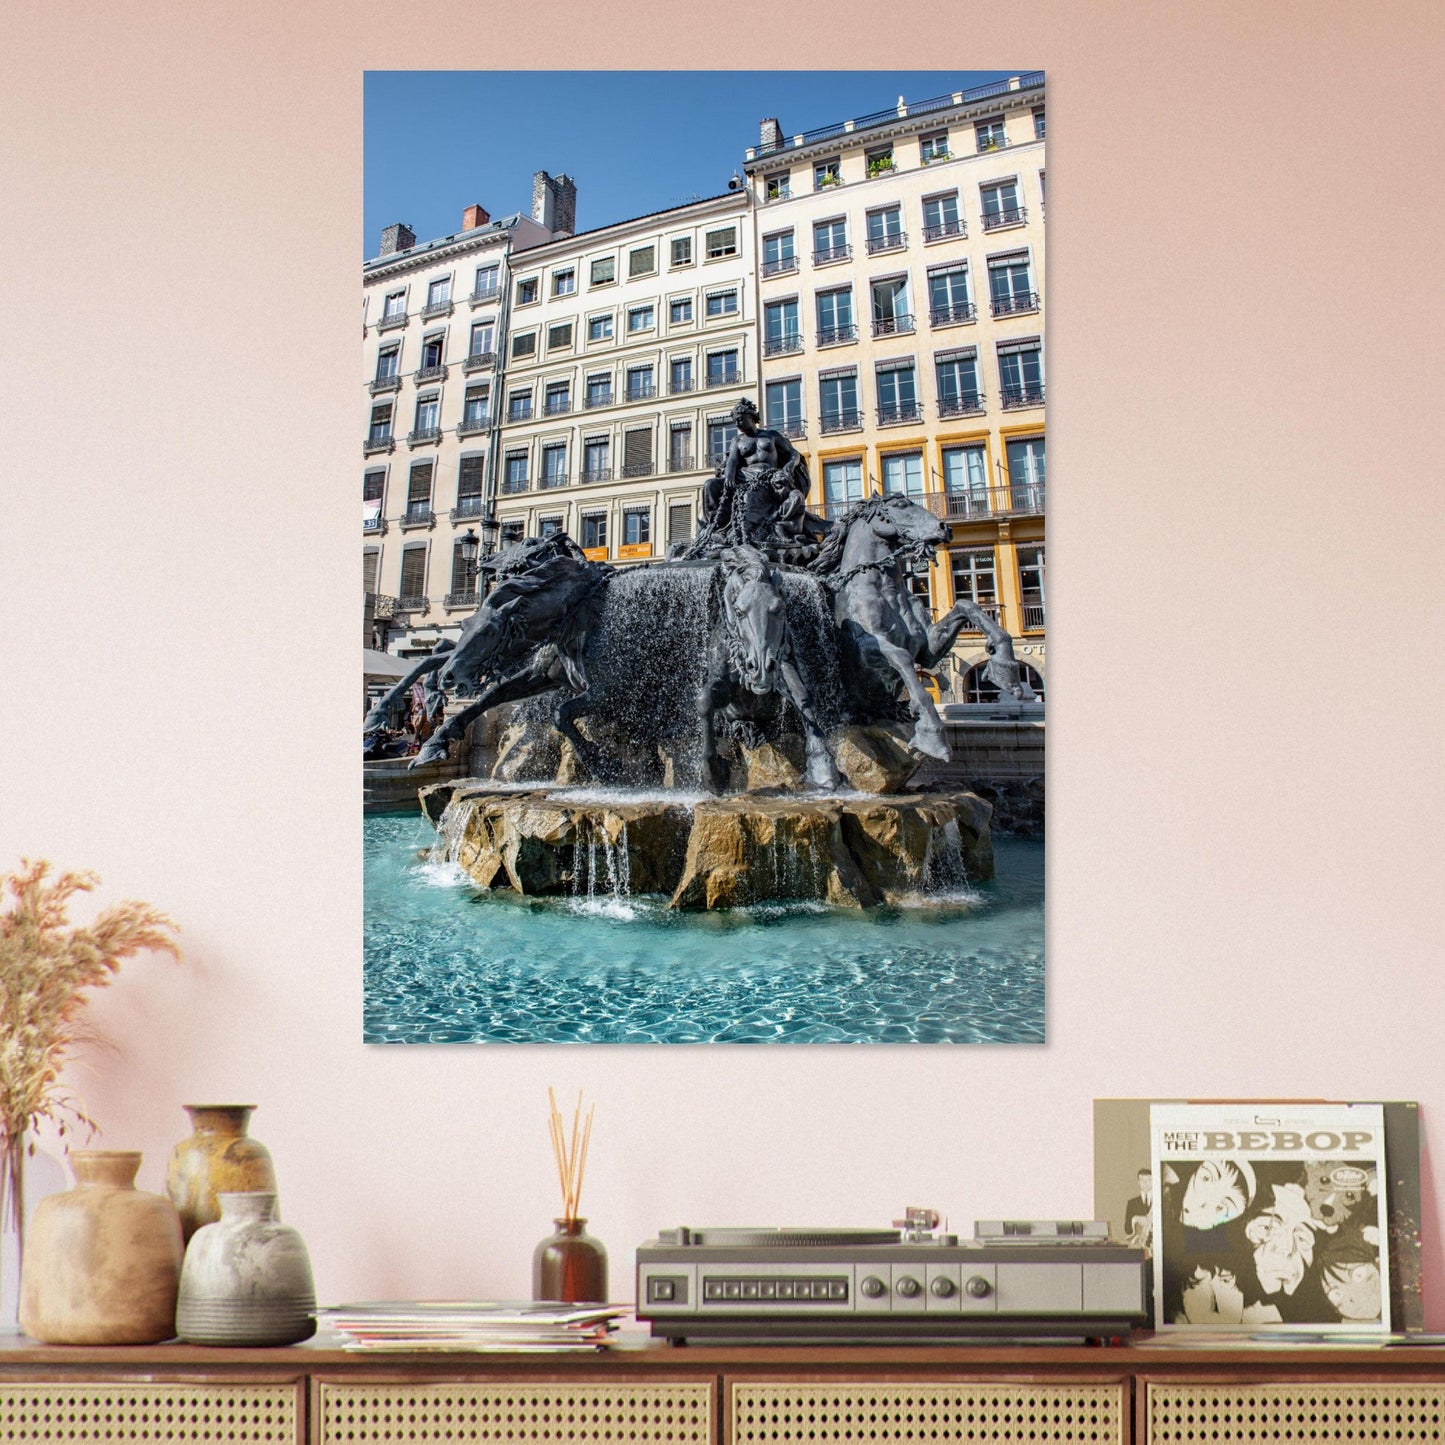 Vente Photo de la fontaine Bartholdi, Place des Terreaux, Lyon - Tableau photo alu Lyon